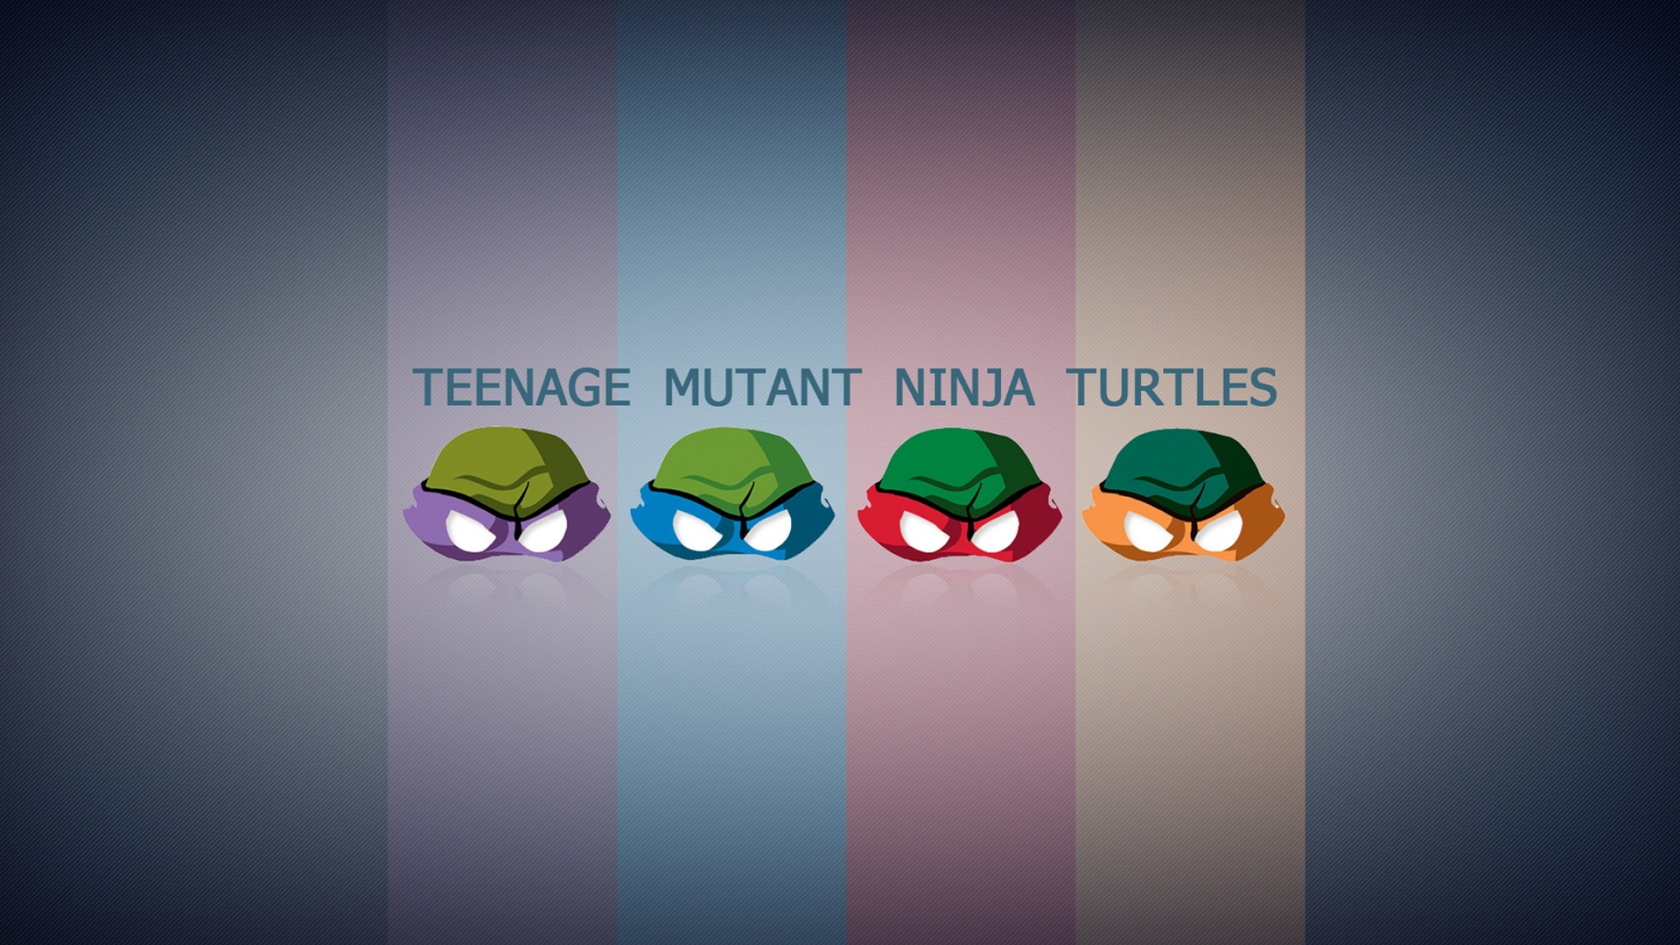 Teengae Mutant Ninja Turtles for 1680 x 945 HDTV resolution